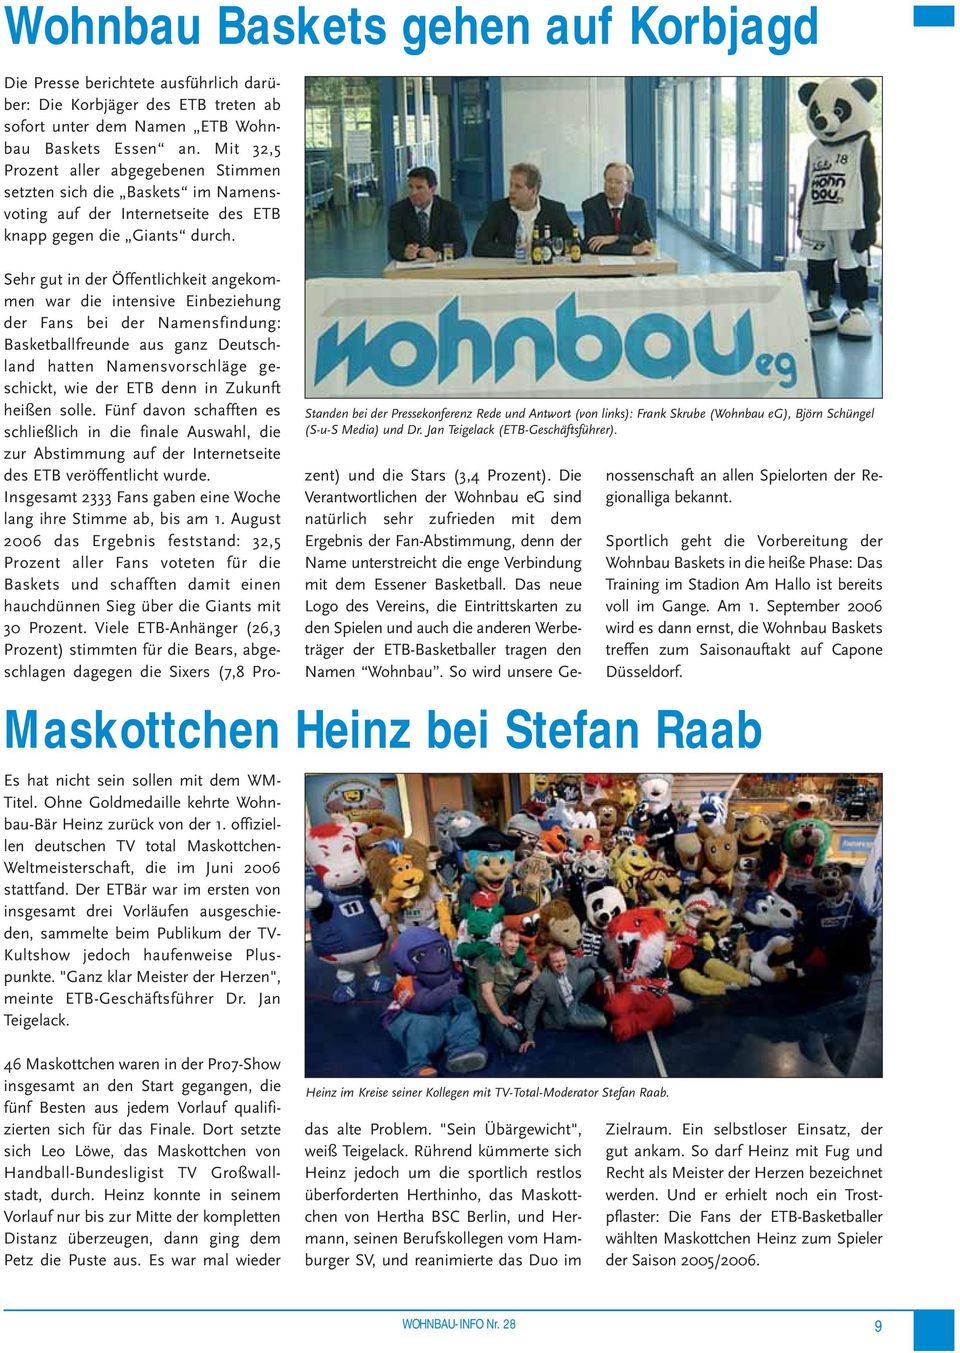 Ohne Goldmedaille kehrte Wohnbau-Bär Heinz zurück von der 1. offiziellen deutschen TV total Maskottchen- Weltmeisterschaft, die im Juni 2006 stattfand.